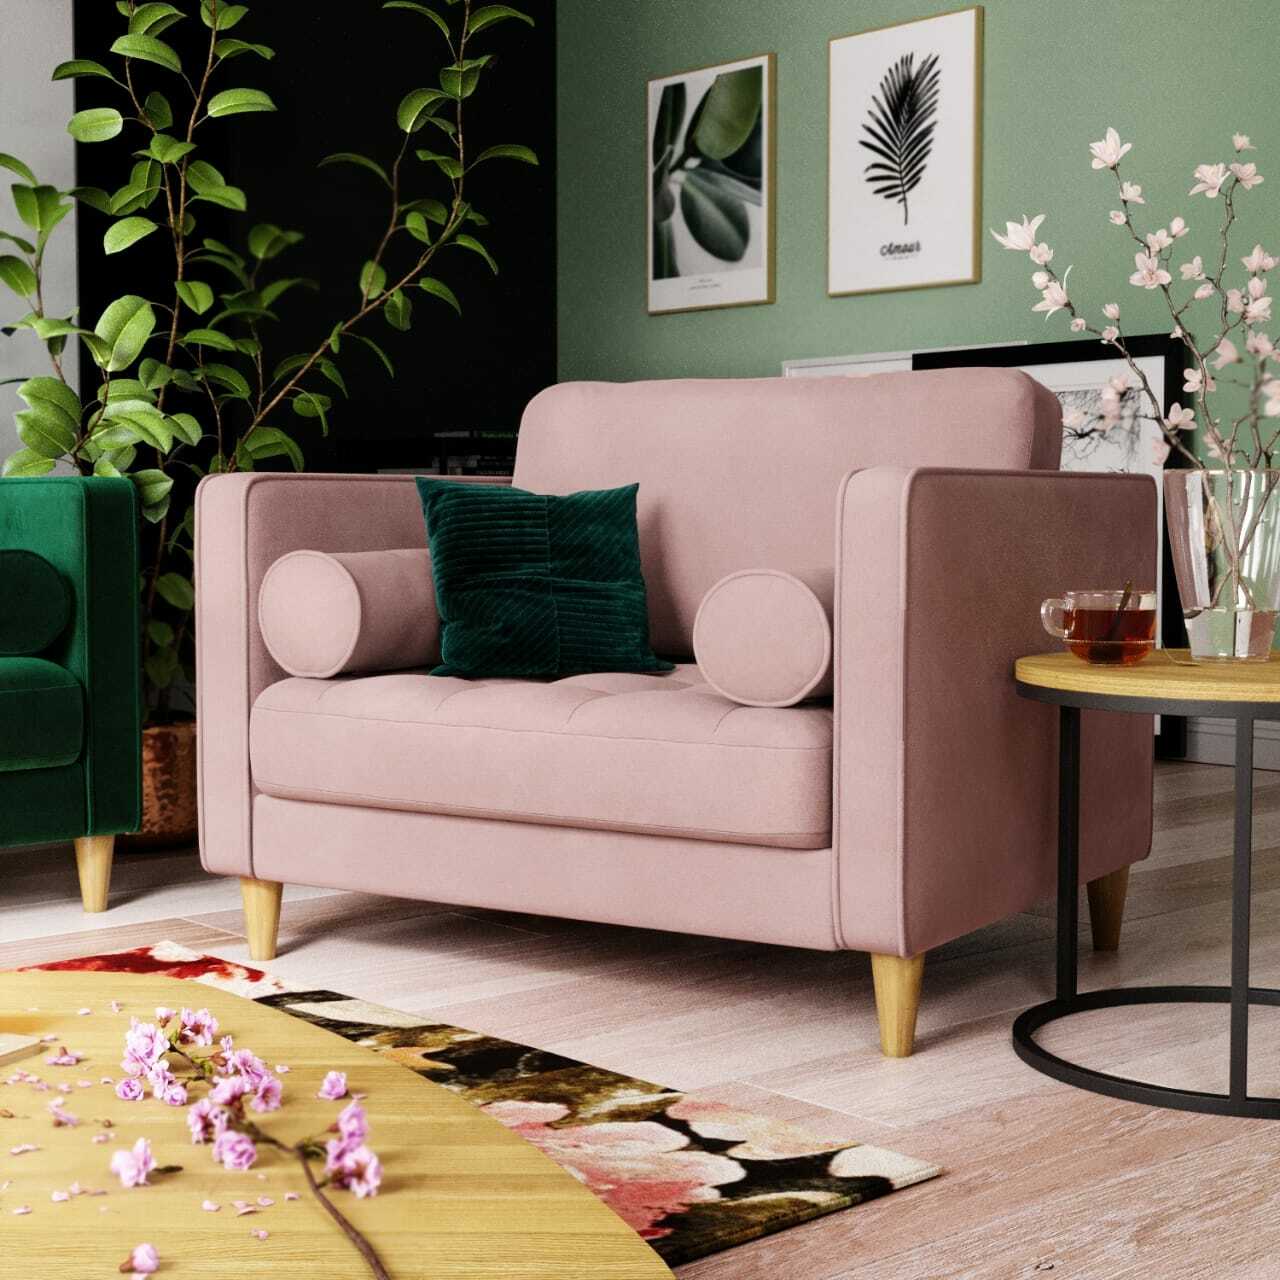 Розовые стены зеленый диван